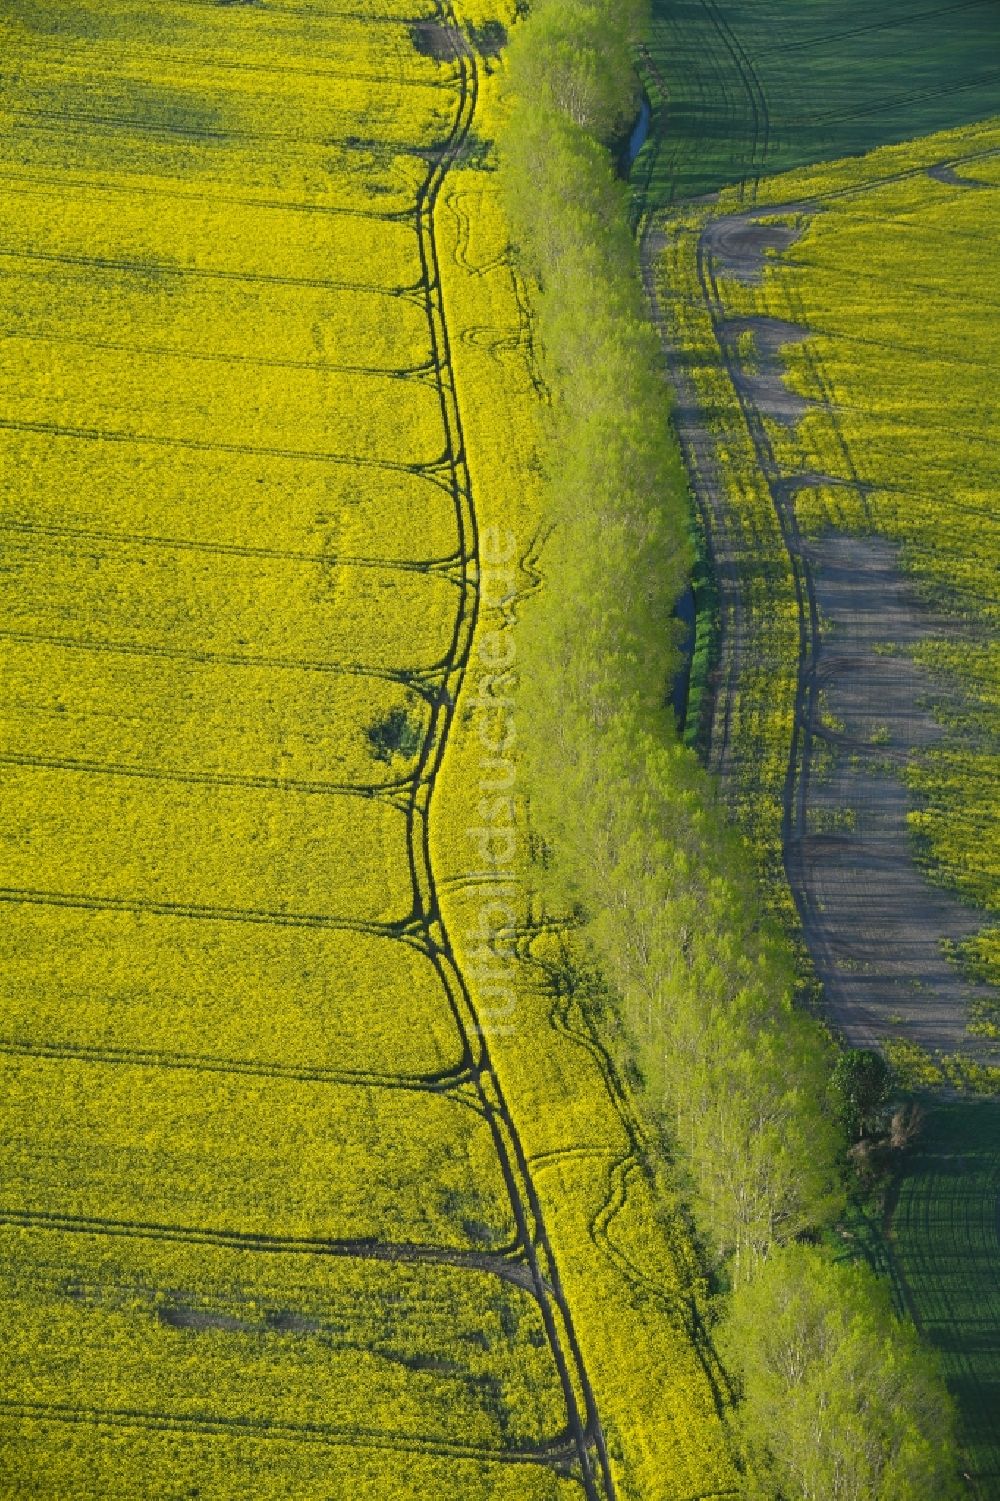 Hohenberg-Krusemark von oben - Feld- Landschaft gelb blühender Raps- Blüten in Hohenberg-Krusemark im Bundesland Sachsen-Anhalt, Deutschland